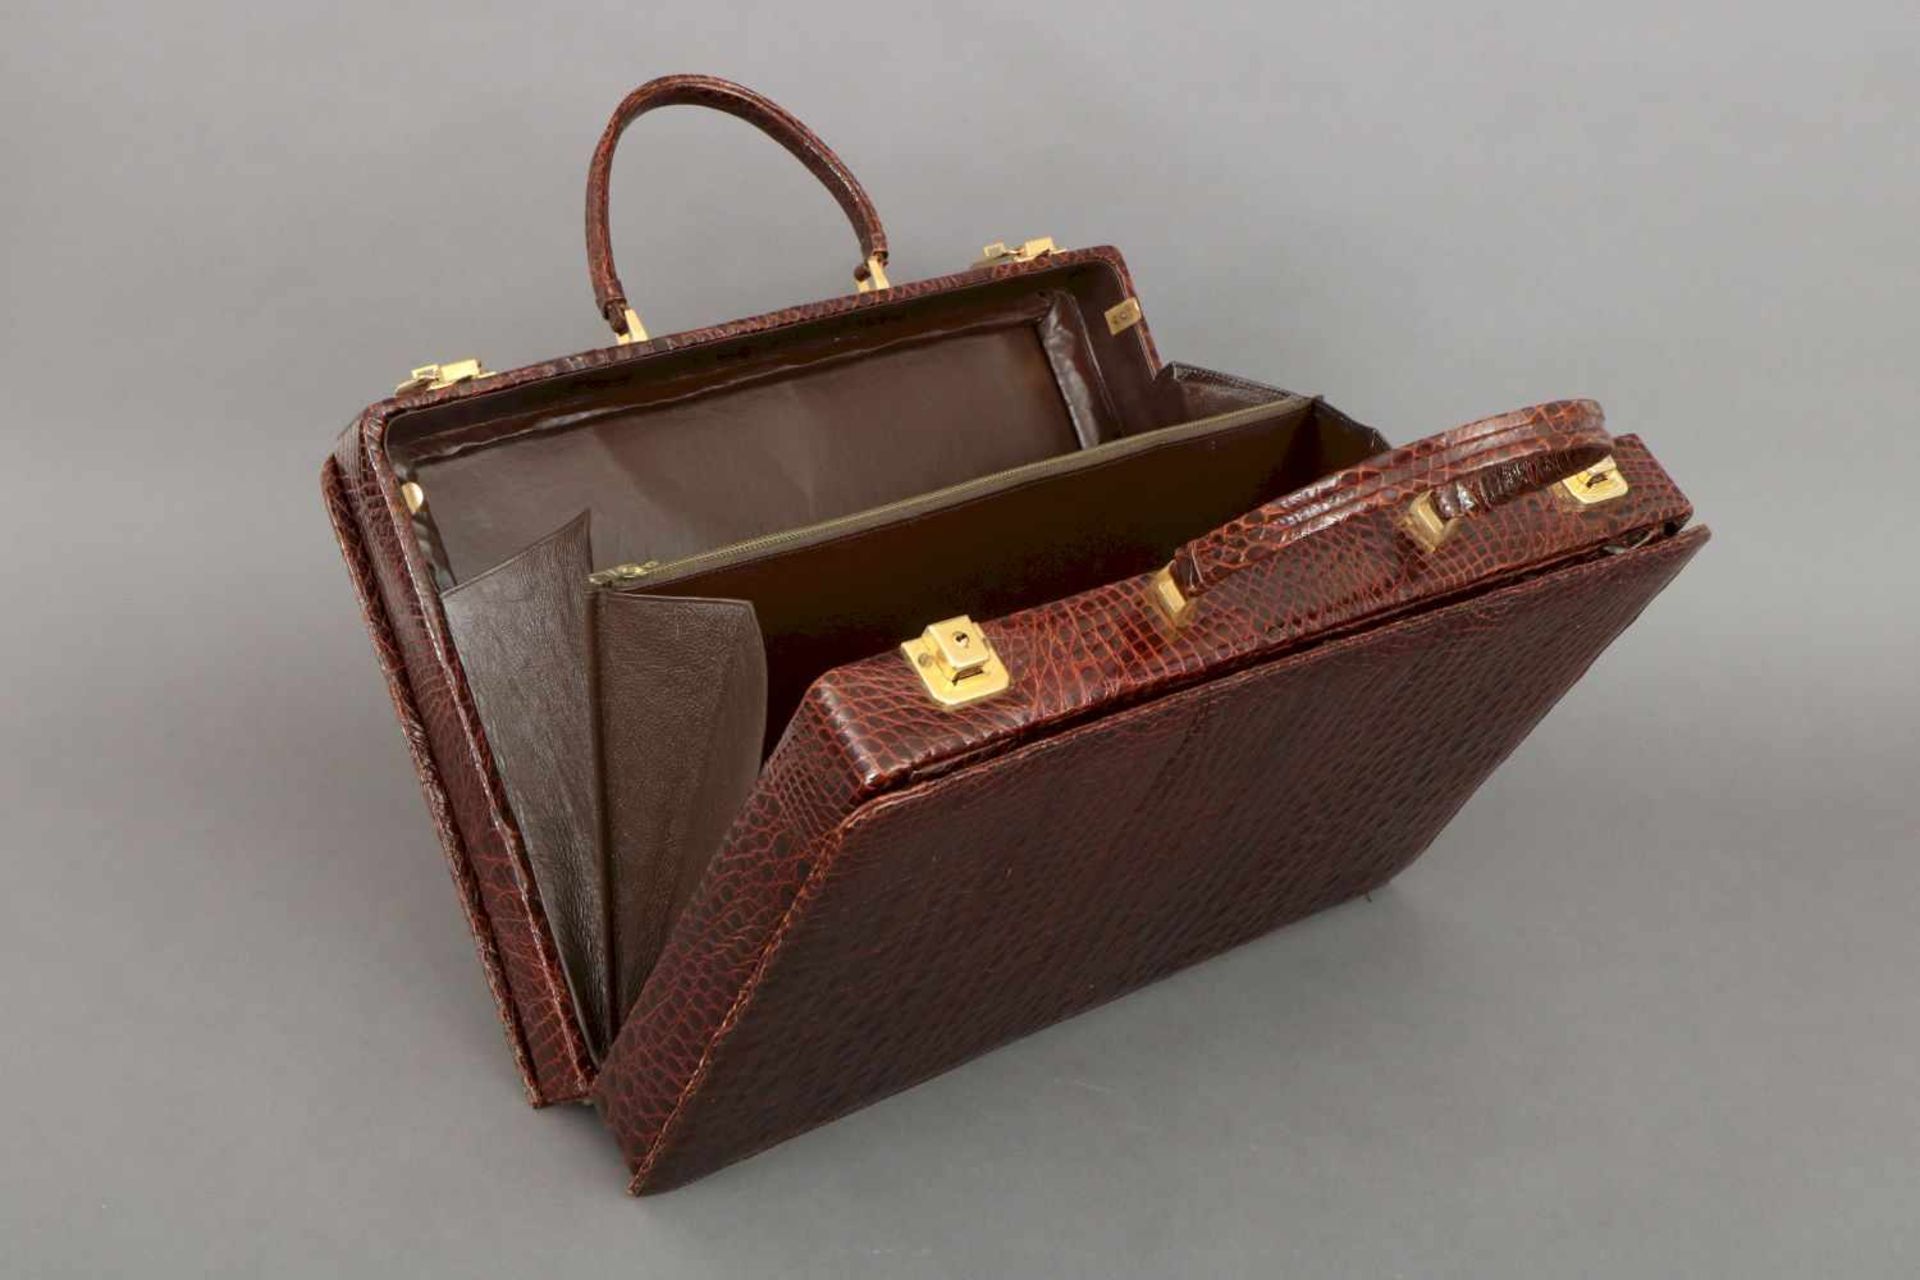 Damenaktenkofferrechteckiger Koffer mit 2 kurzen Tragegriffen, dunkelbraun gefärbtes Leder mit - Bild 4 aus 4